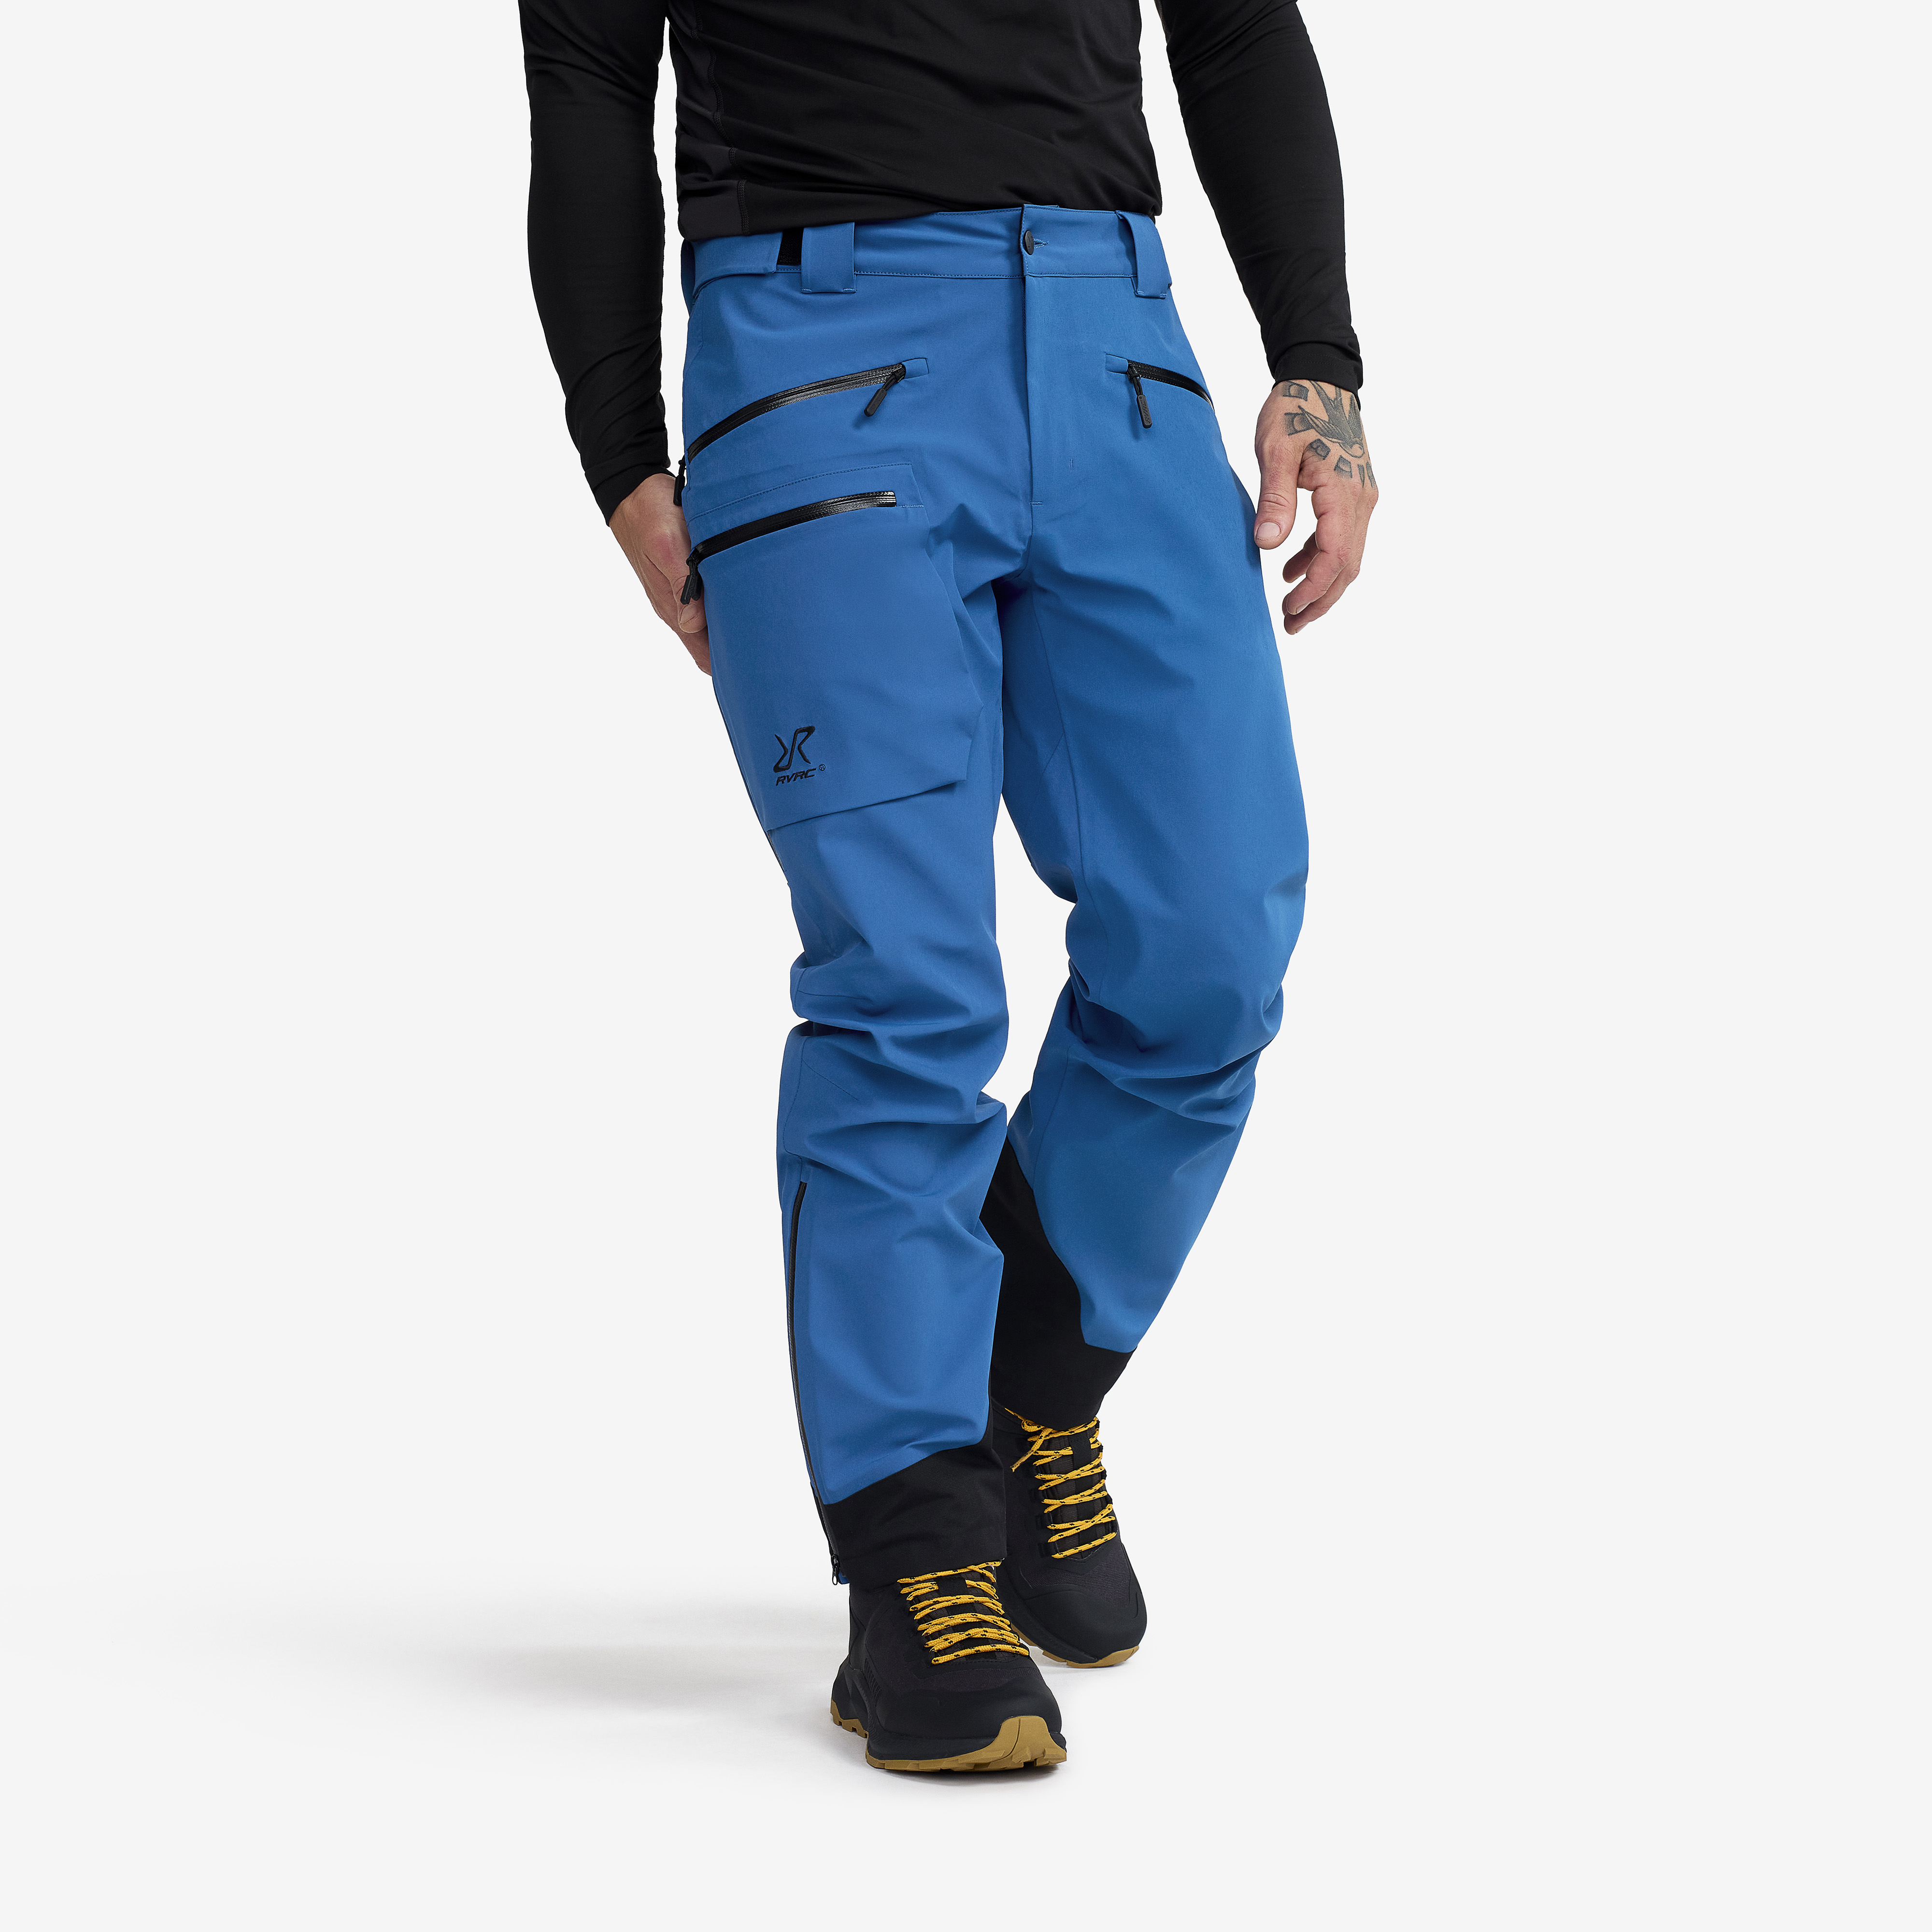 Aphex Pro Pants Classic Blue Homme